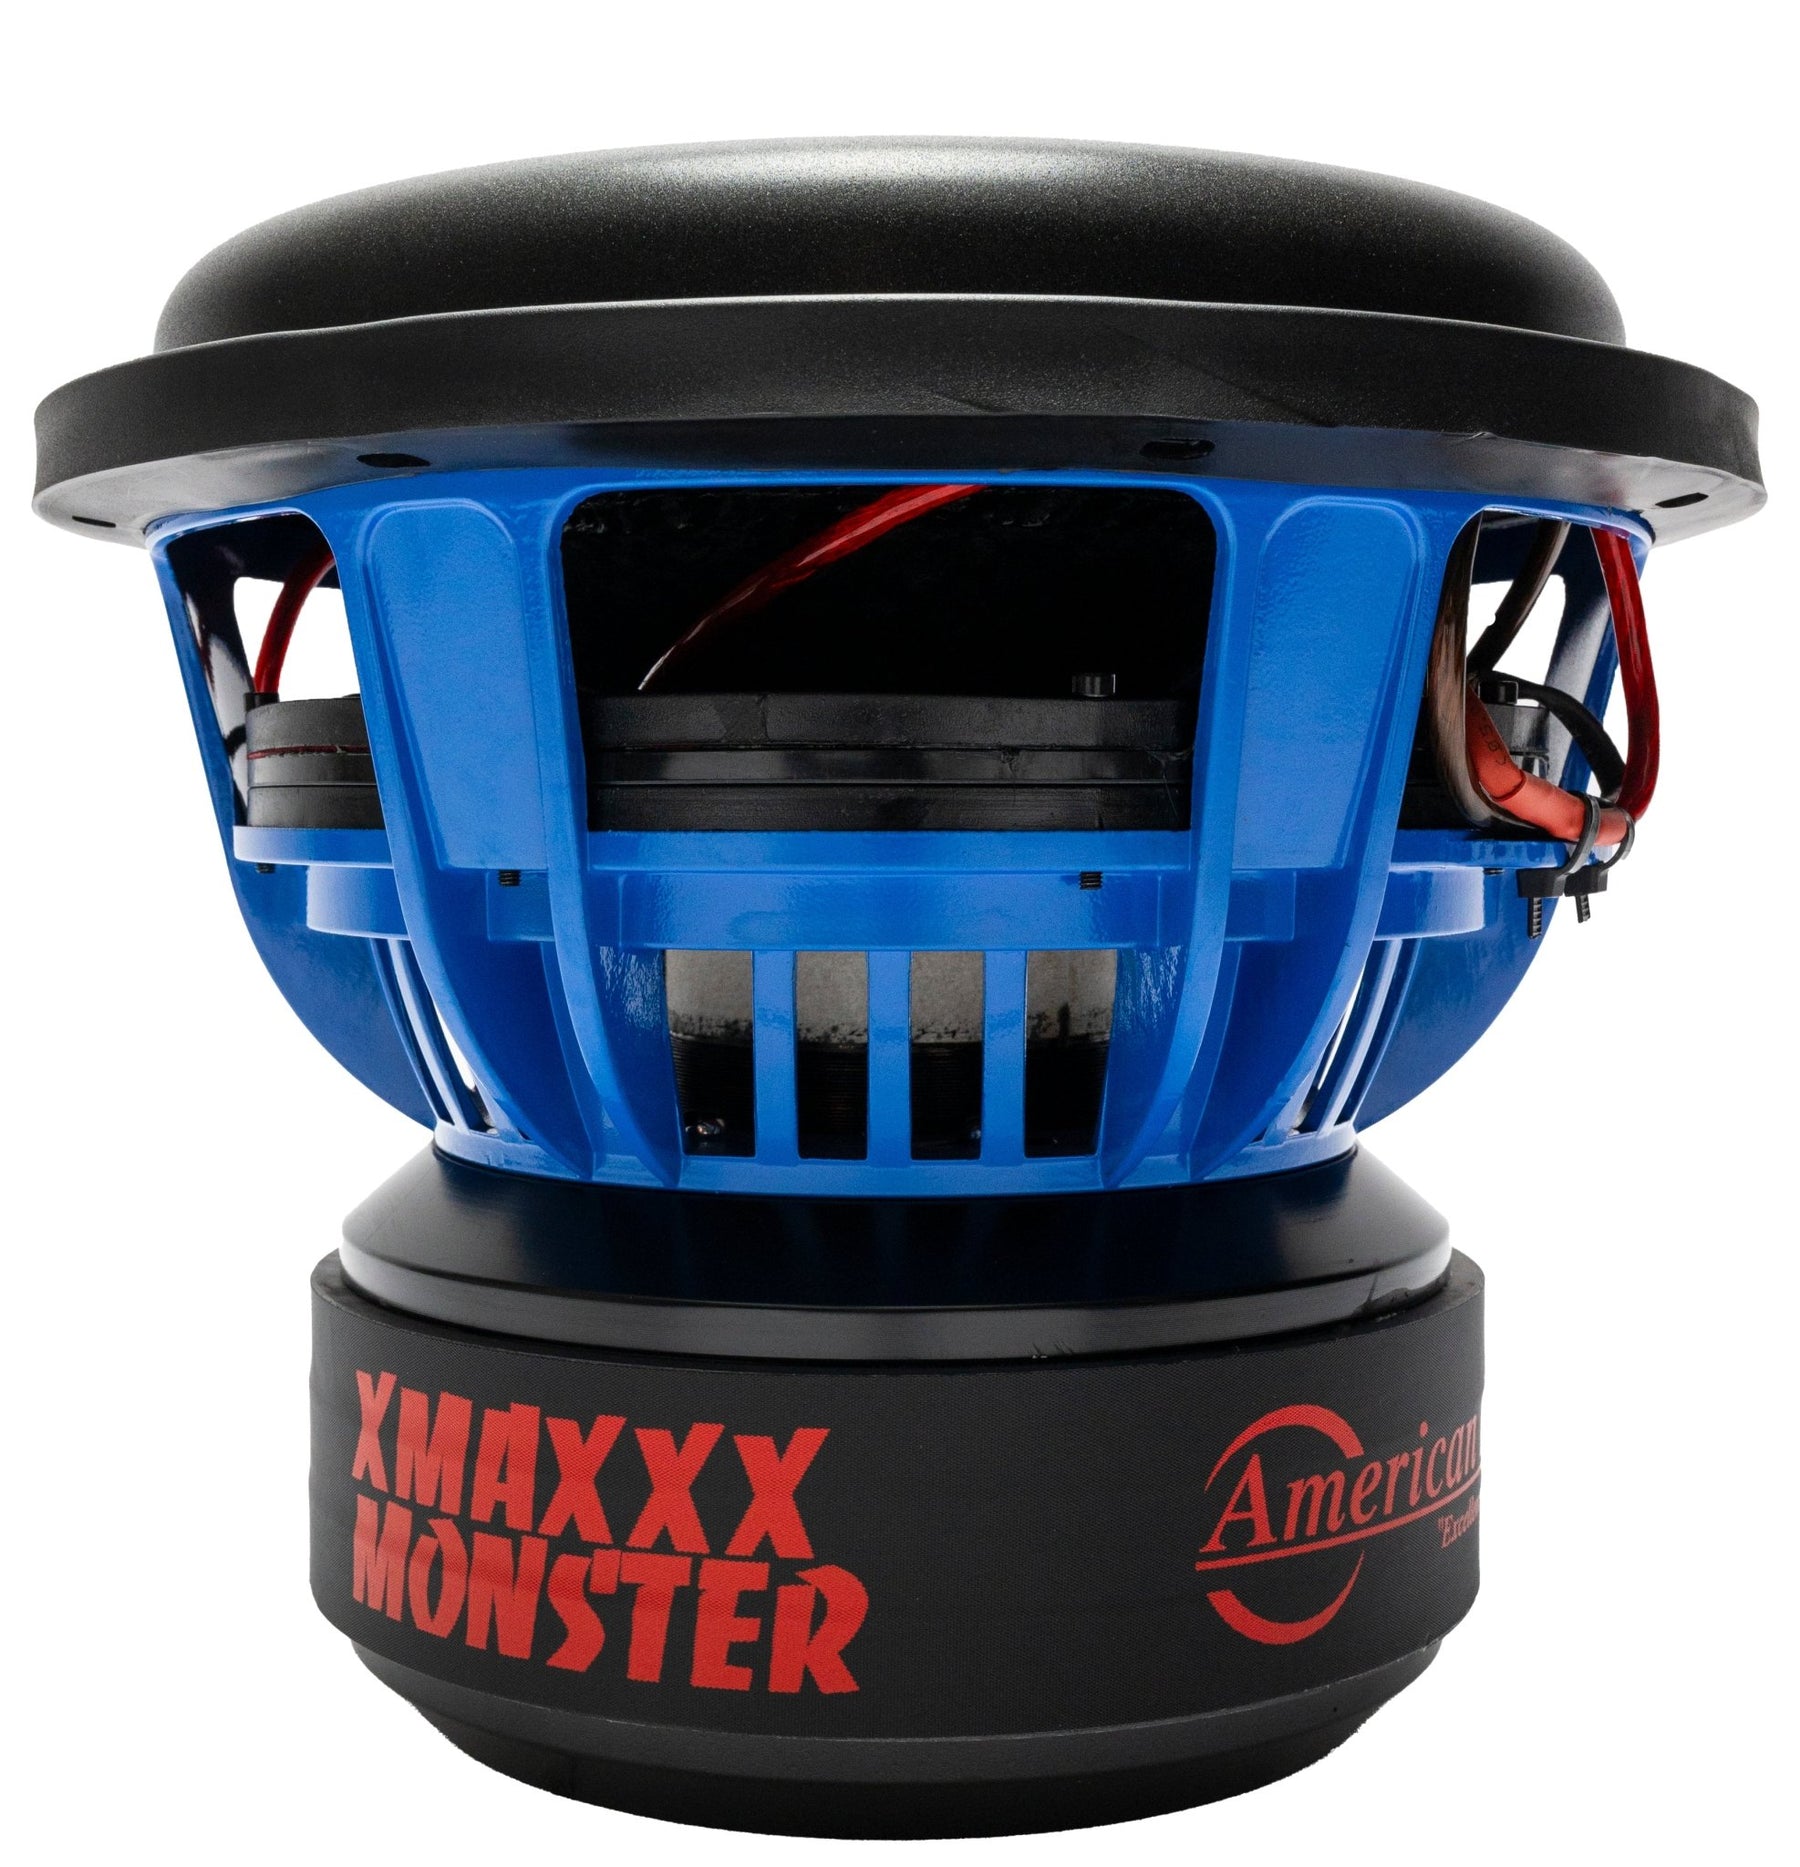 XMAXXX Monster 12" Subwoofer - American Bass Audio